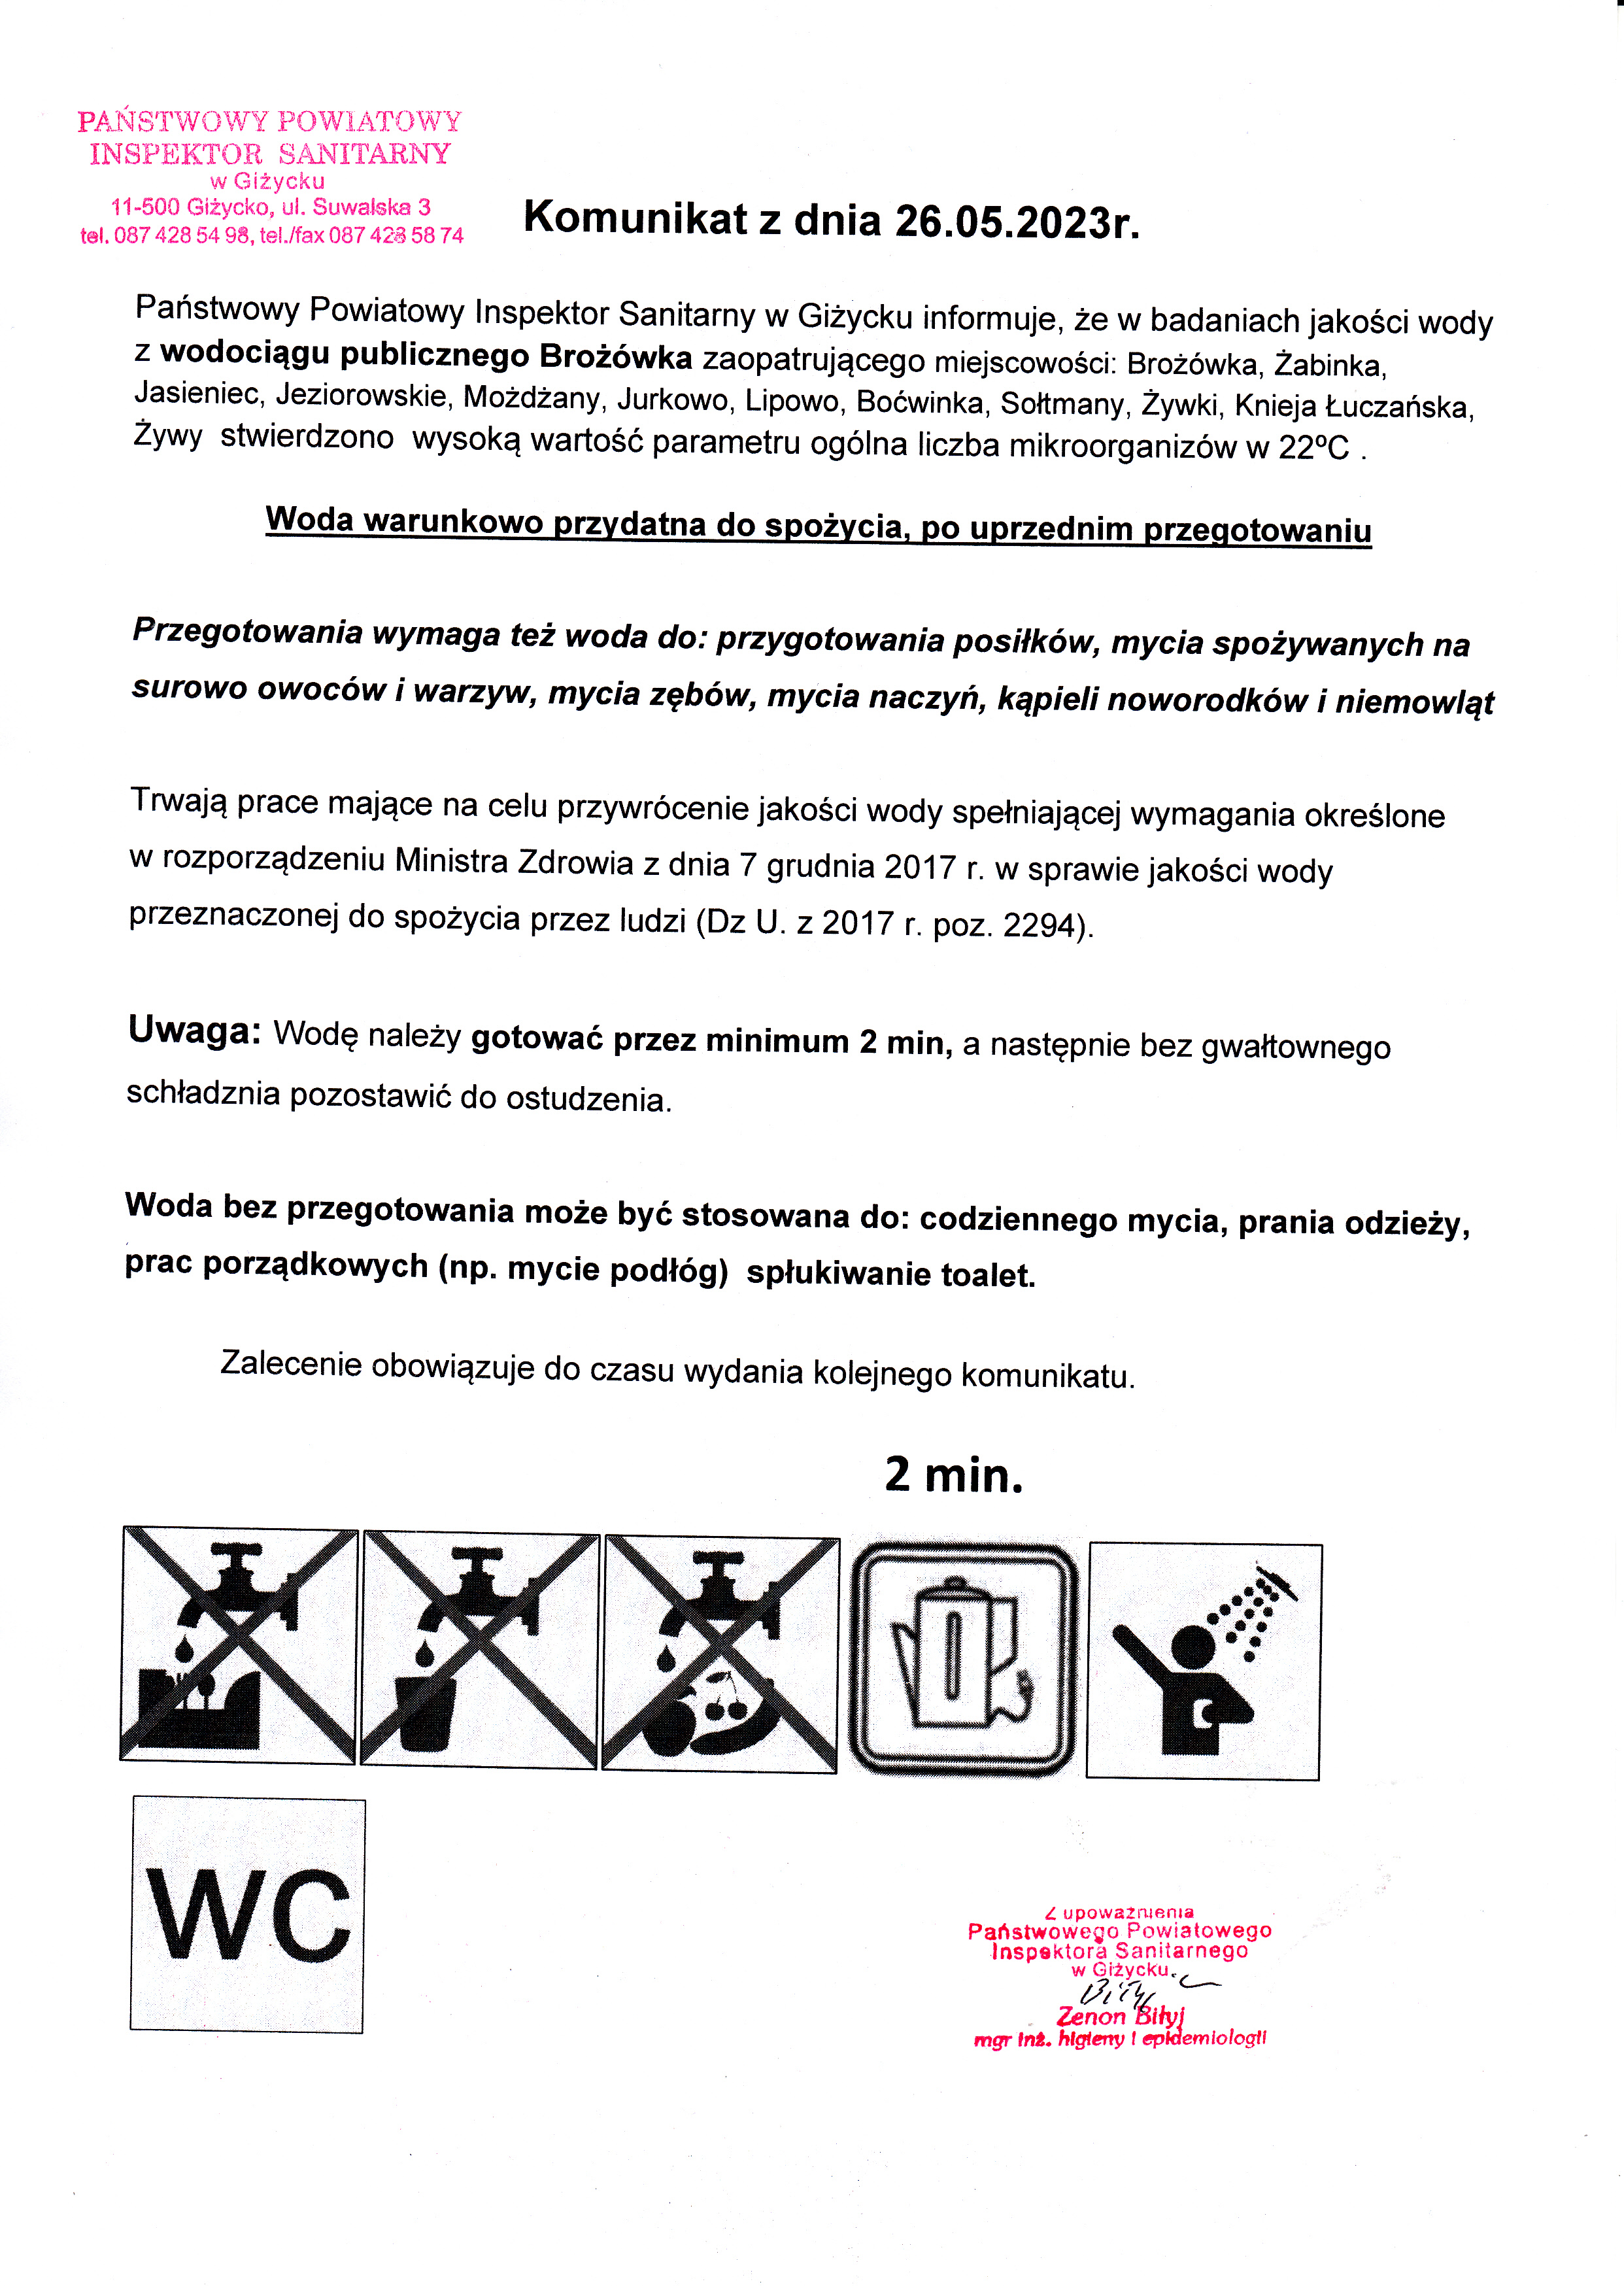 Komunikat z dnia 26.05.2023 r. (dot. wodociągu publicznego Brożówka)